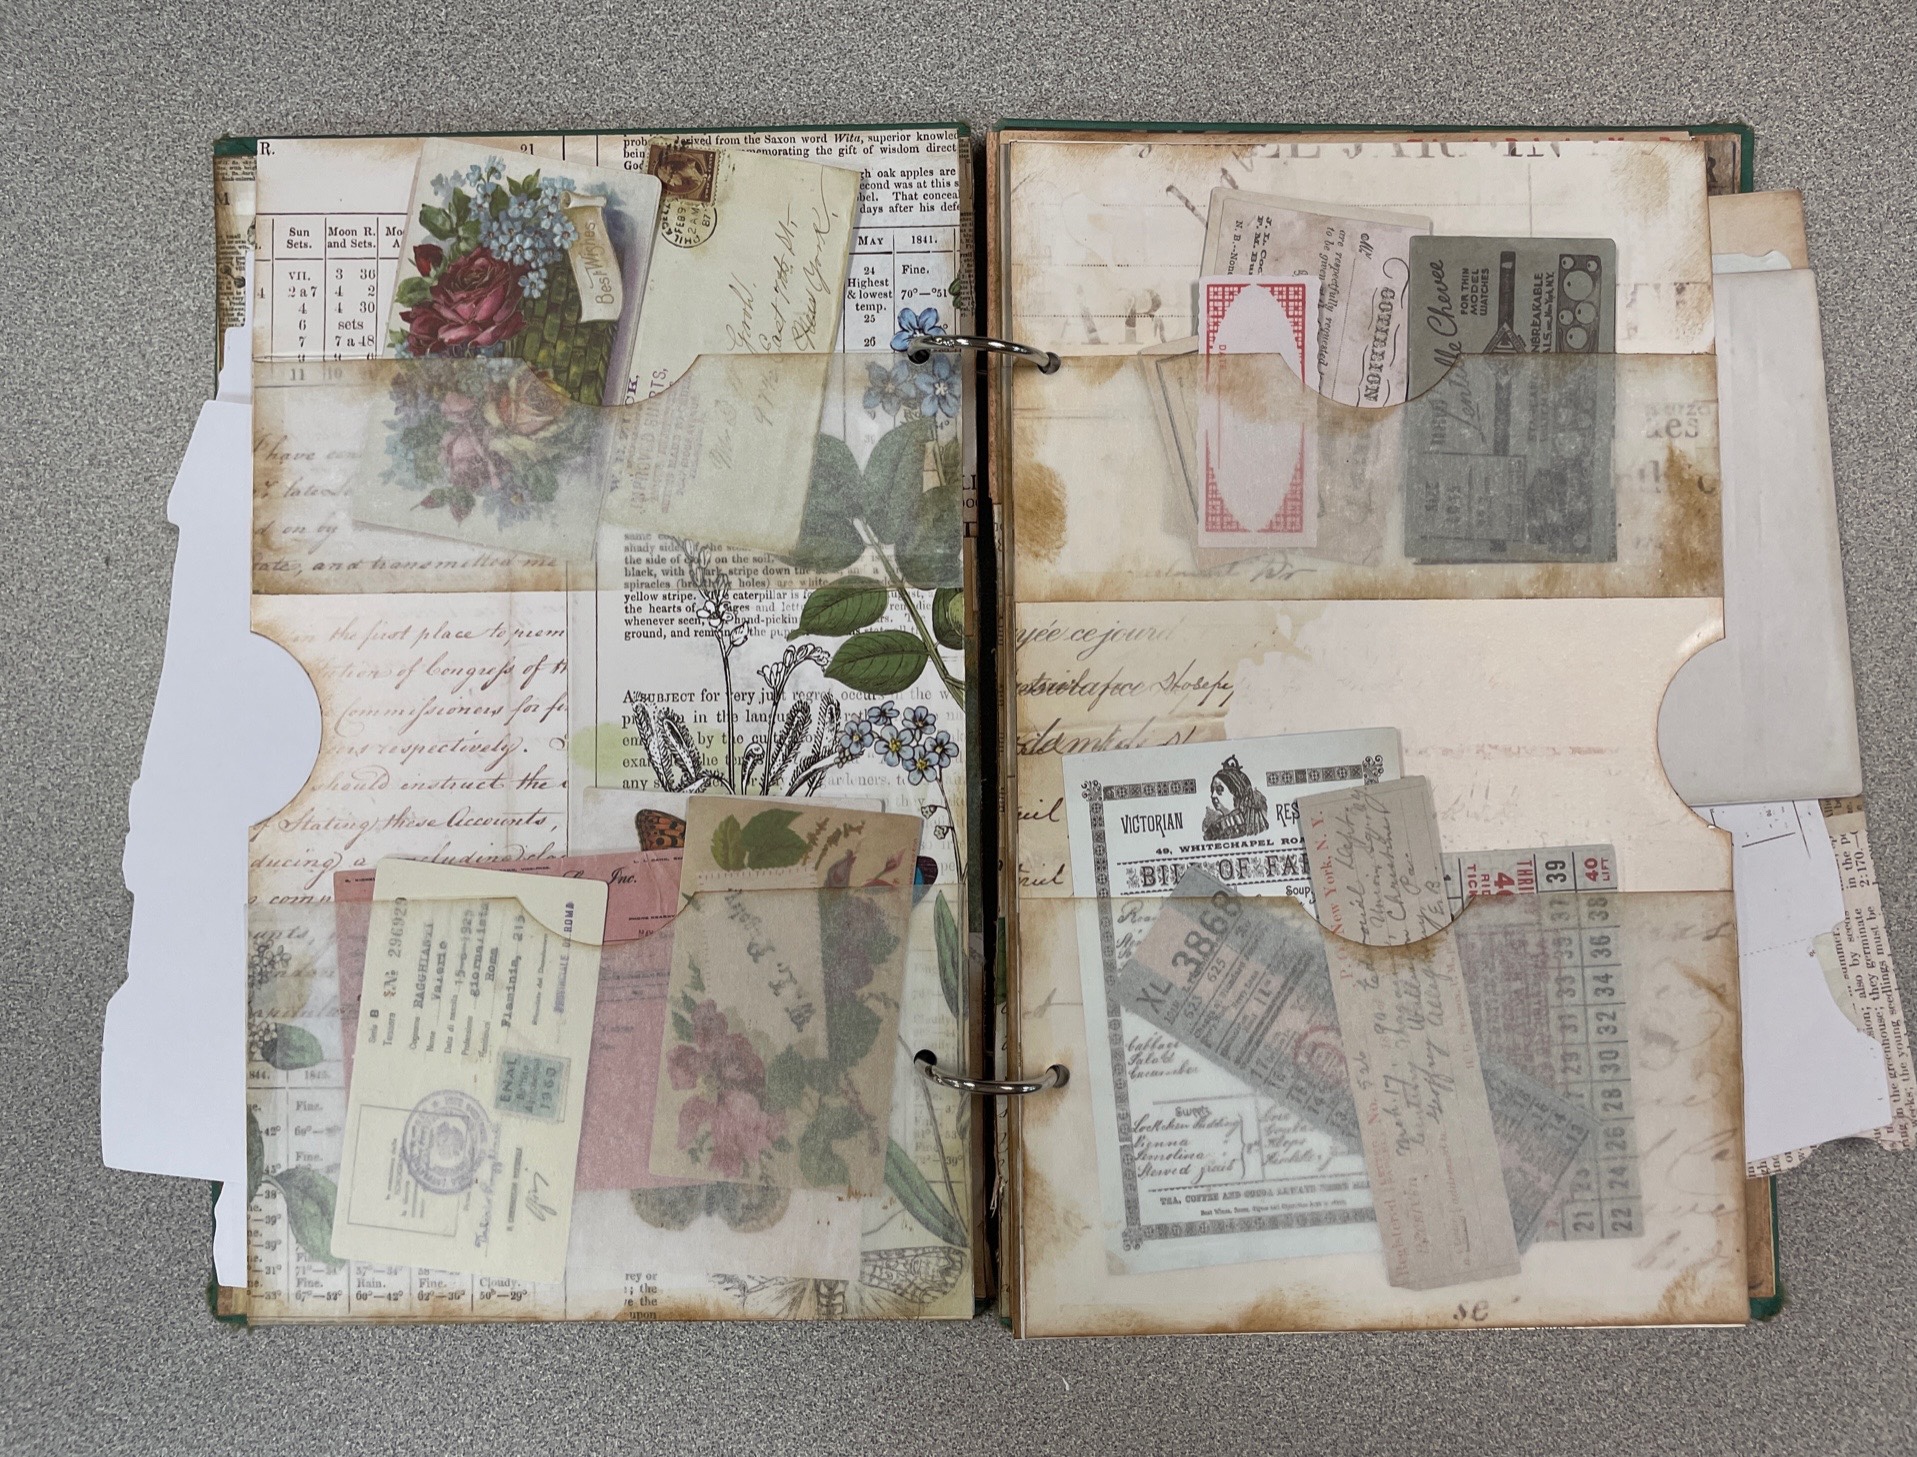 LOST MEADOWS EPHEMERA BOOK - COMING SOON #scrapbook #journaling #vintage